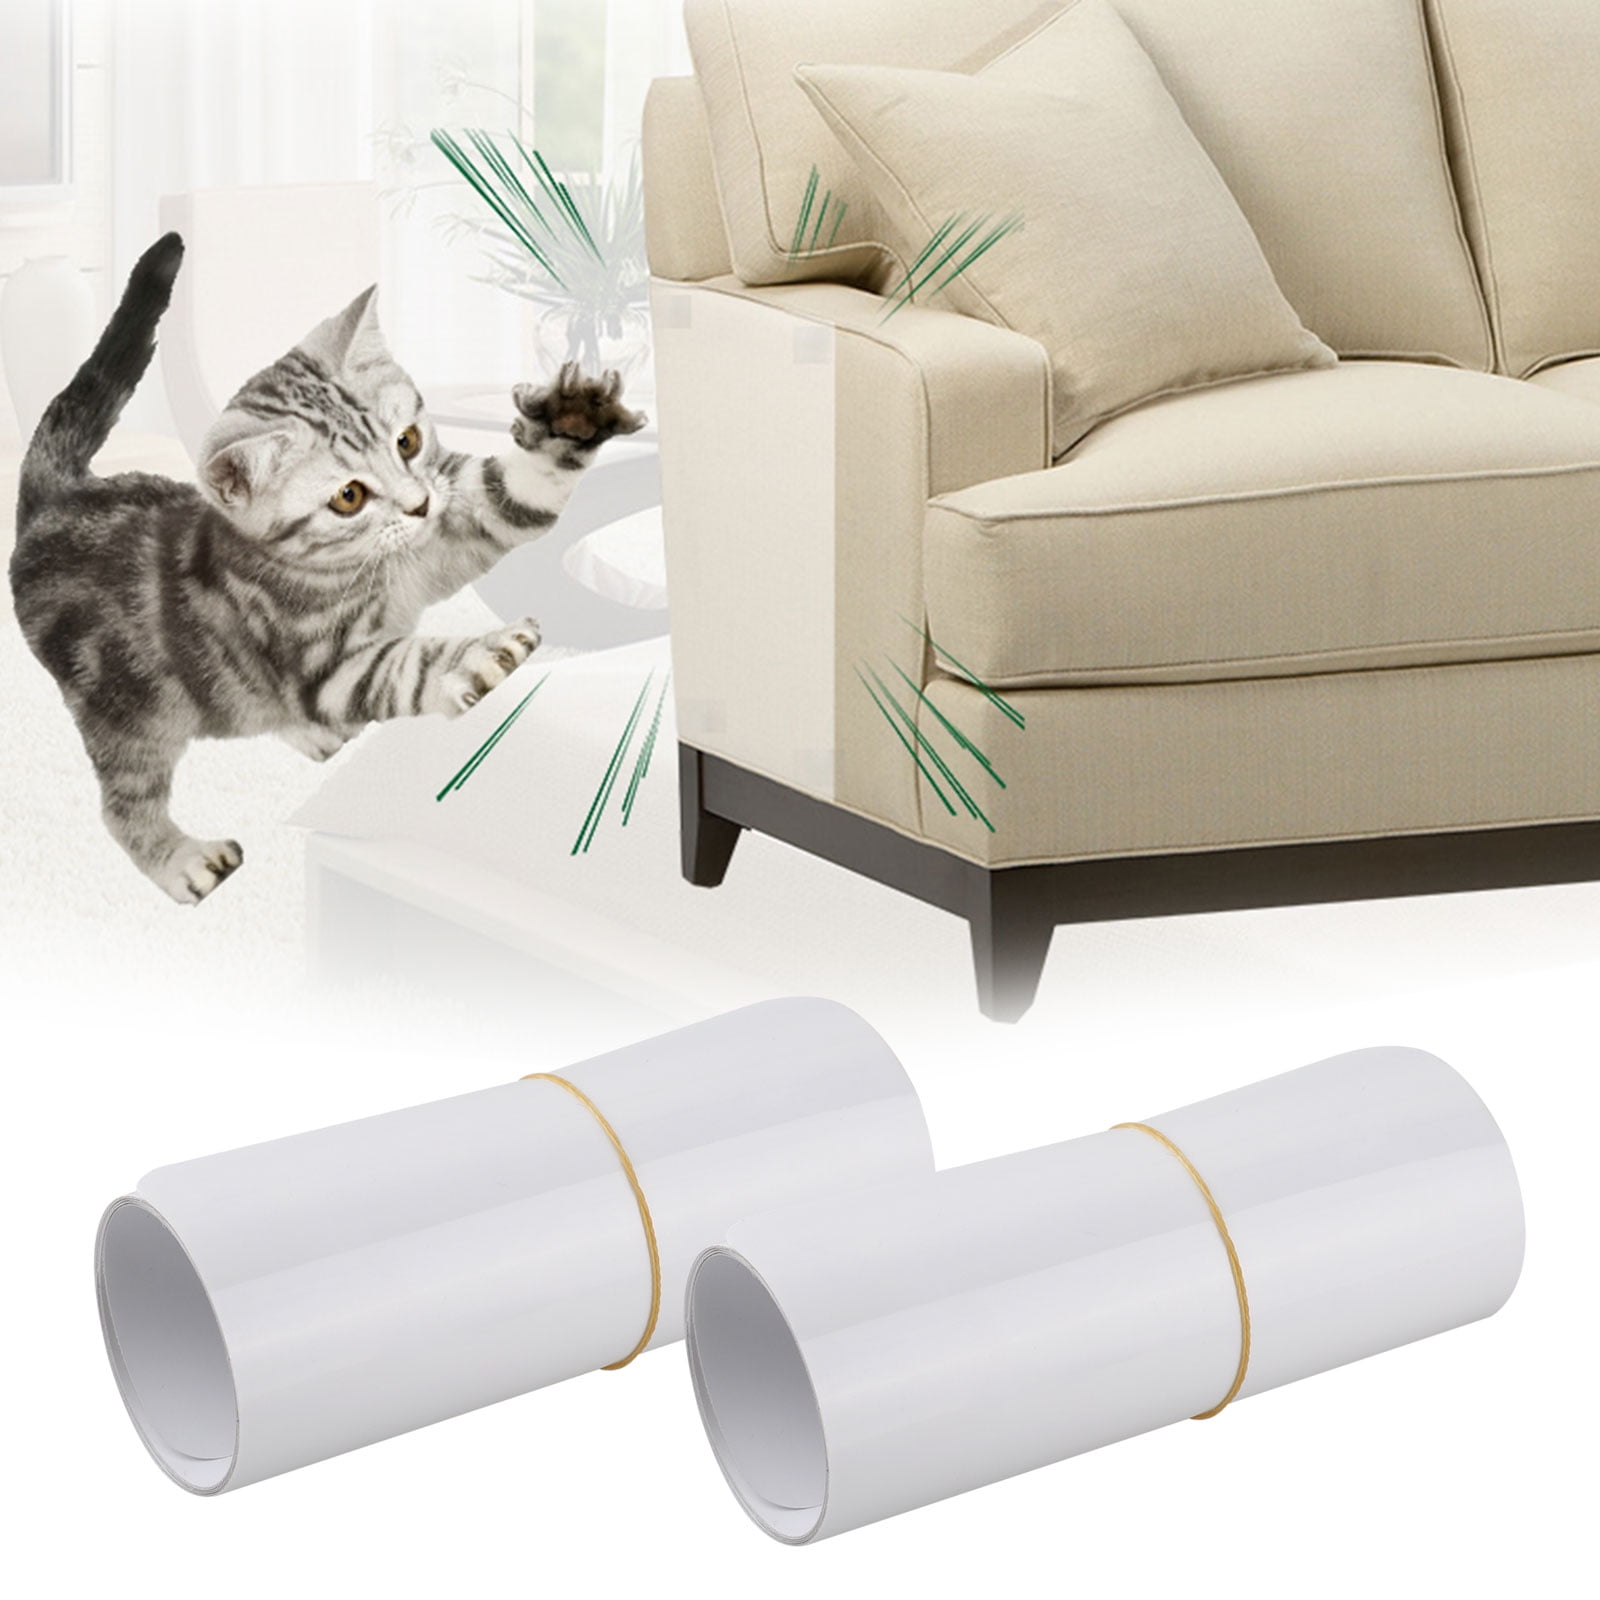 TSV Furniture Scratch Protector, 18.5x5.9in Pet Cat Scratch Guard Mat